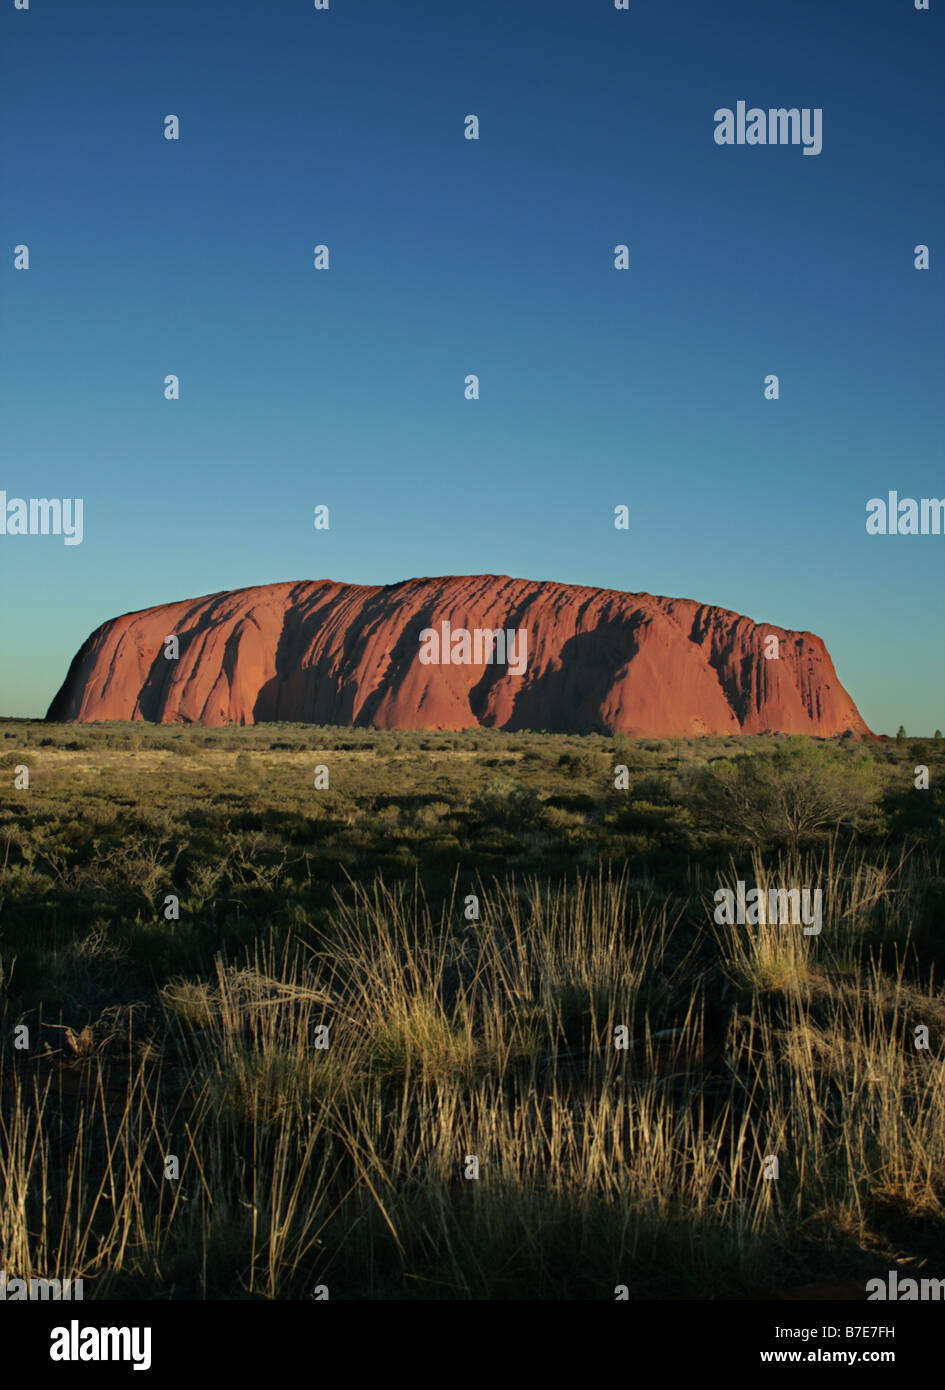 Ayers Rock Northern Territory Australien - spirituelle Heimat für  Aborigines-Porträt. Uluru (englische Aussprache: /ˌuːluː Stockfotografie -  Alamy